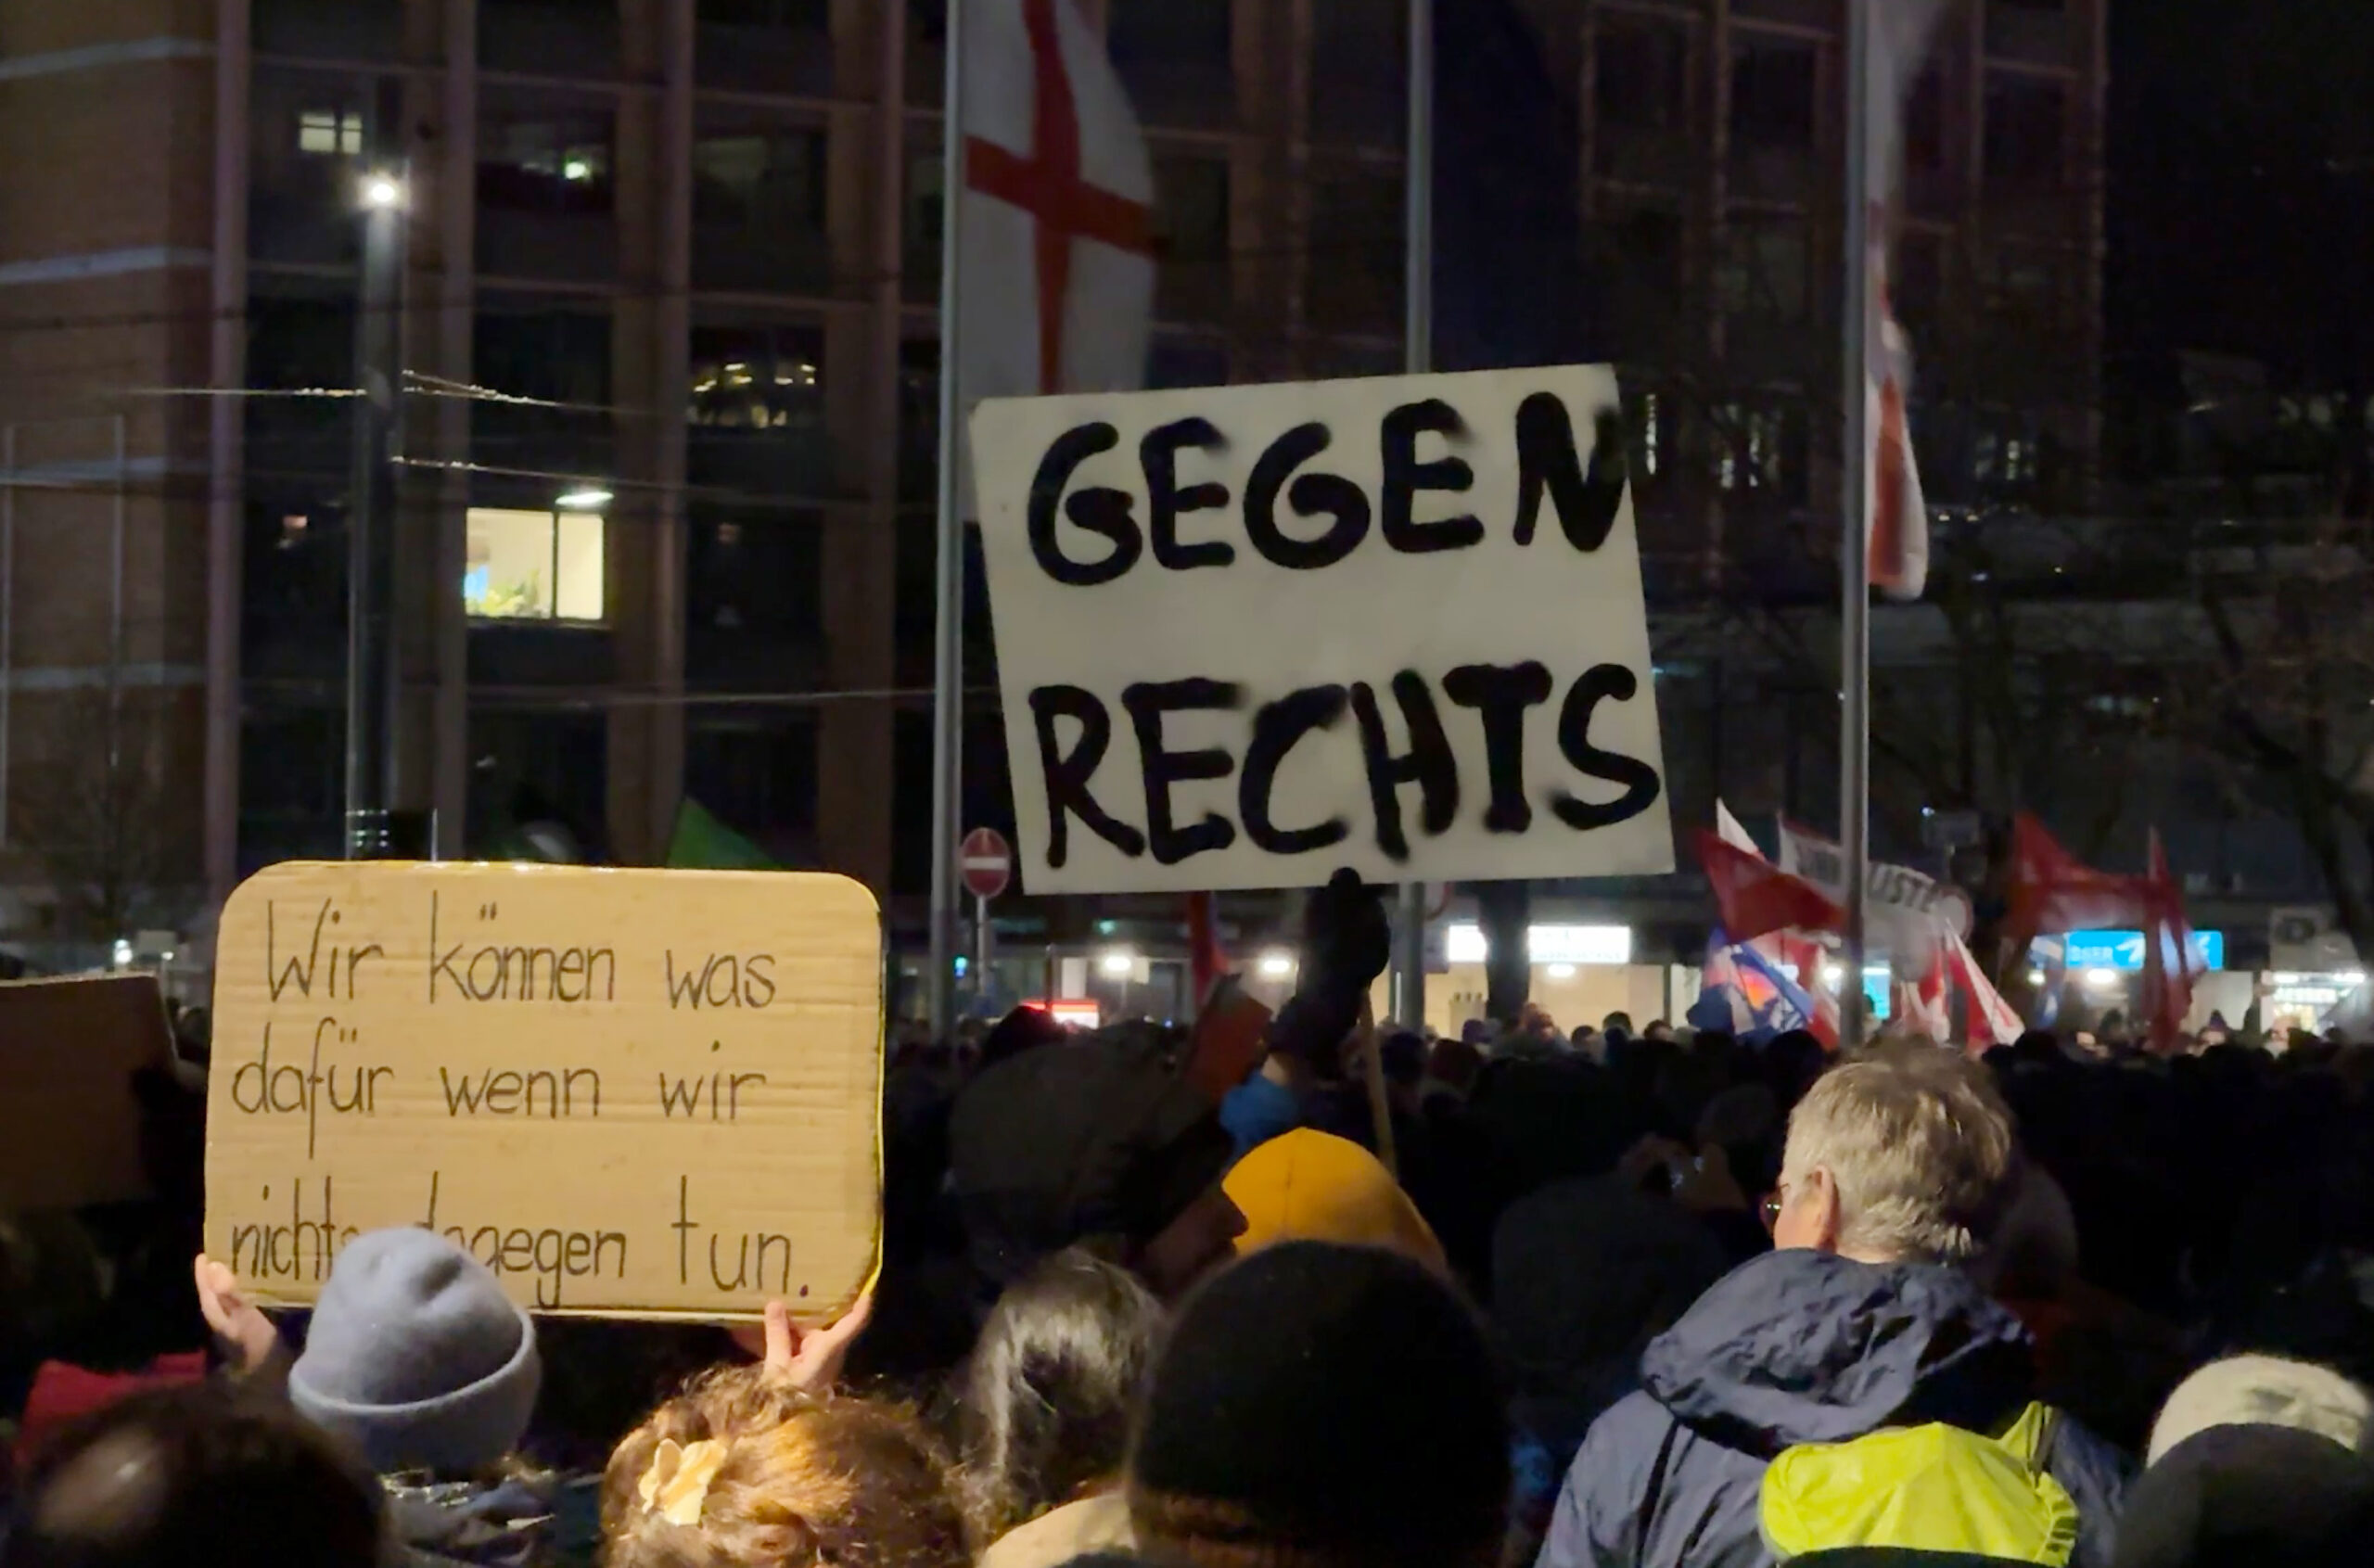 Freiburg: Menschen demonstrieren gegen Rechtsextremismus auf dem Platz der alten Synagoge und halten Schilder mit der Aufschrift "Gegen Rechts" und "Wir können was dafür, wenn wir nichts dagegen tun" hoch.